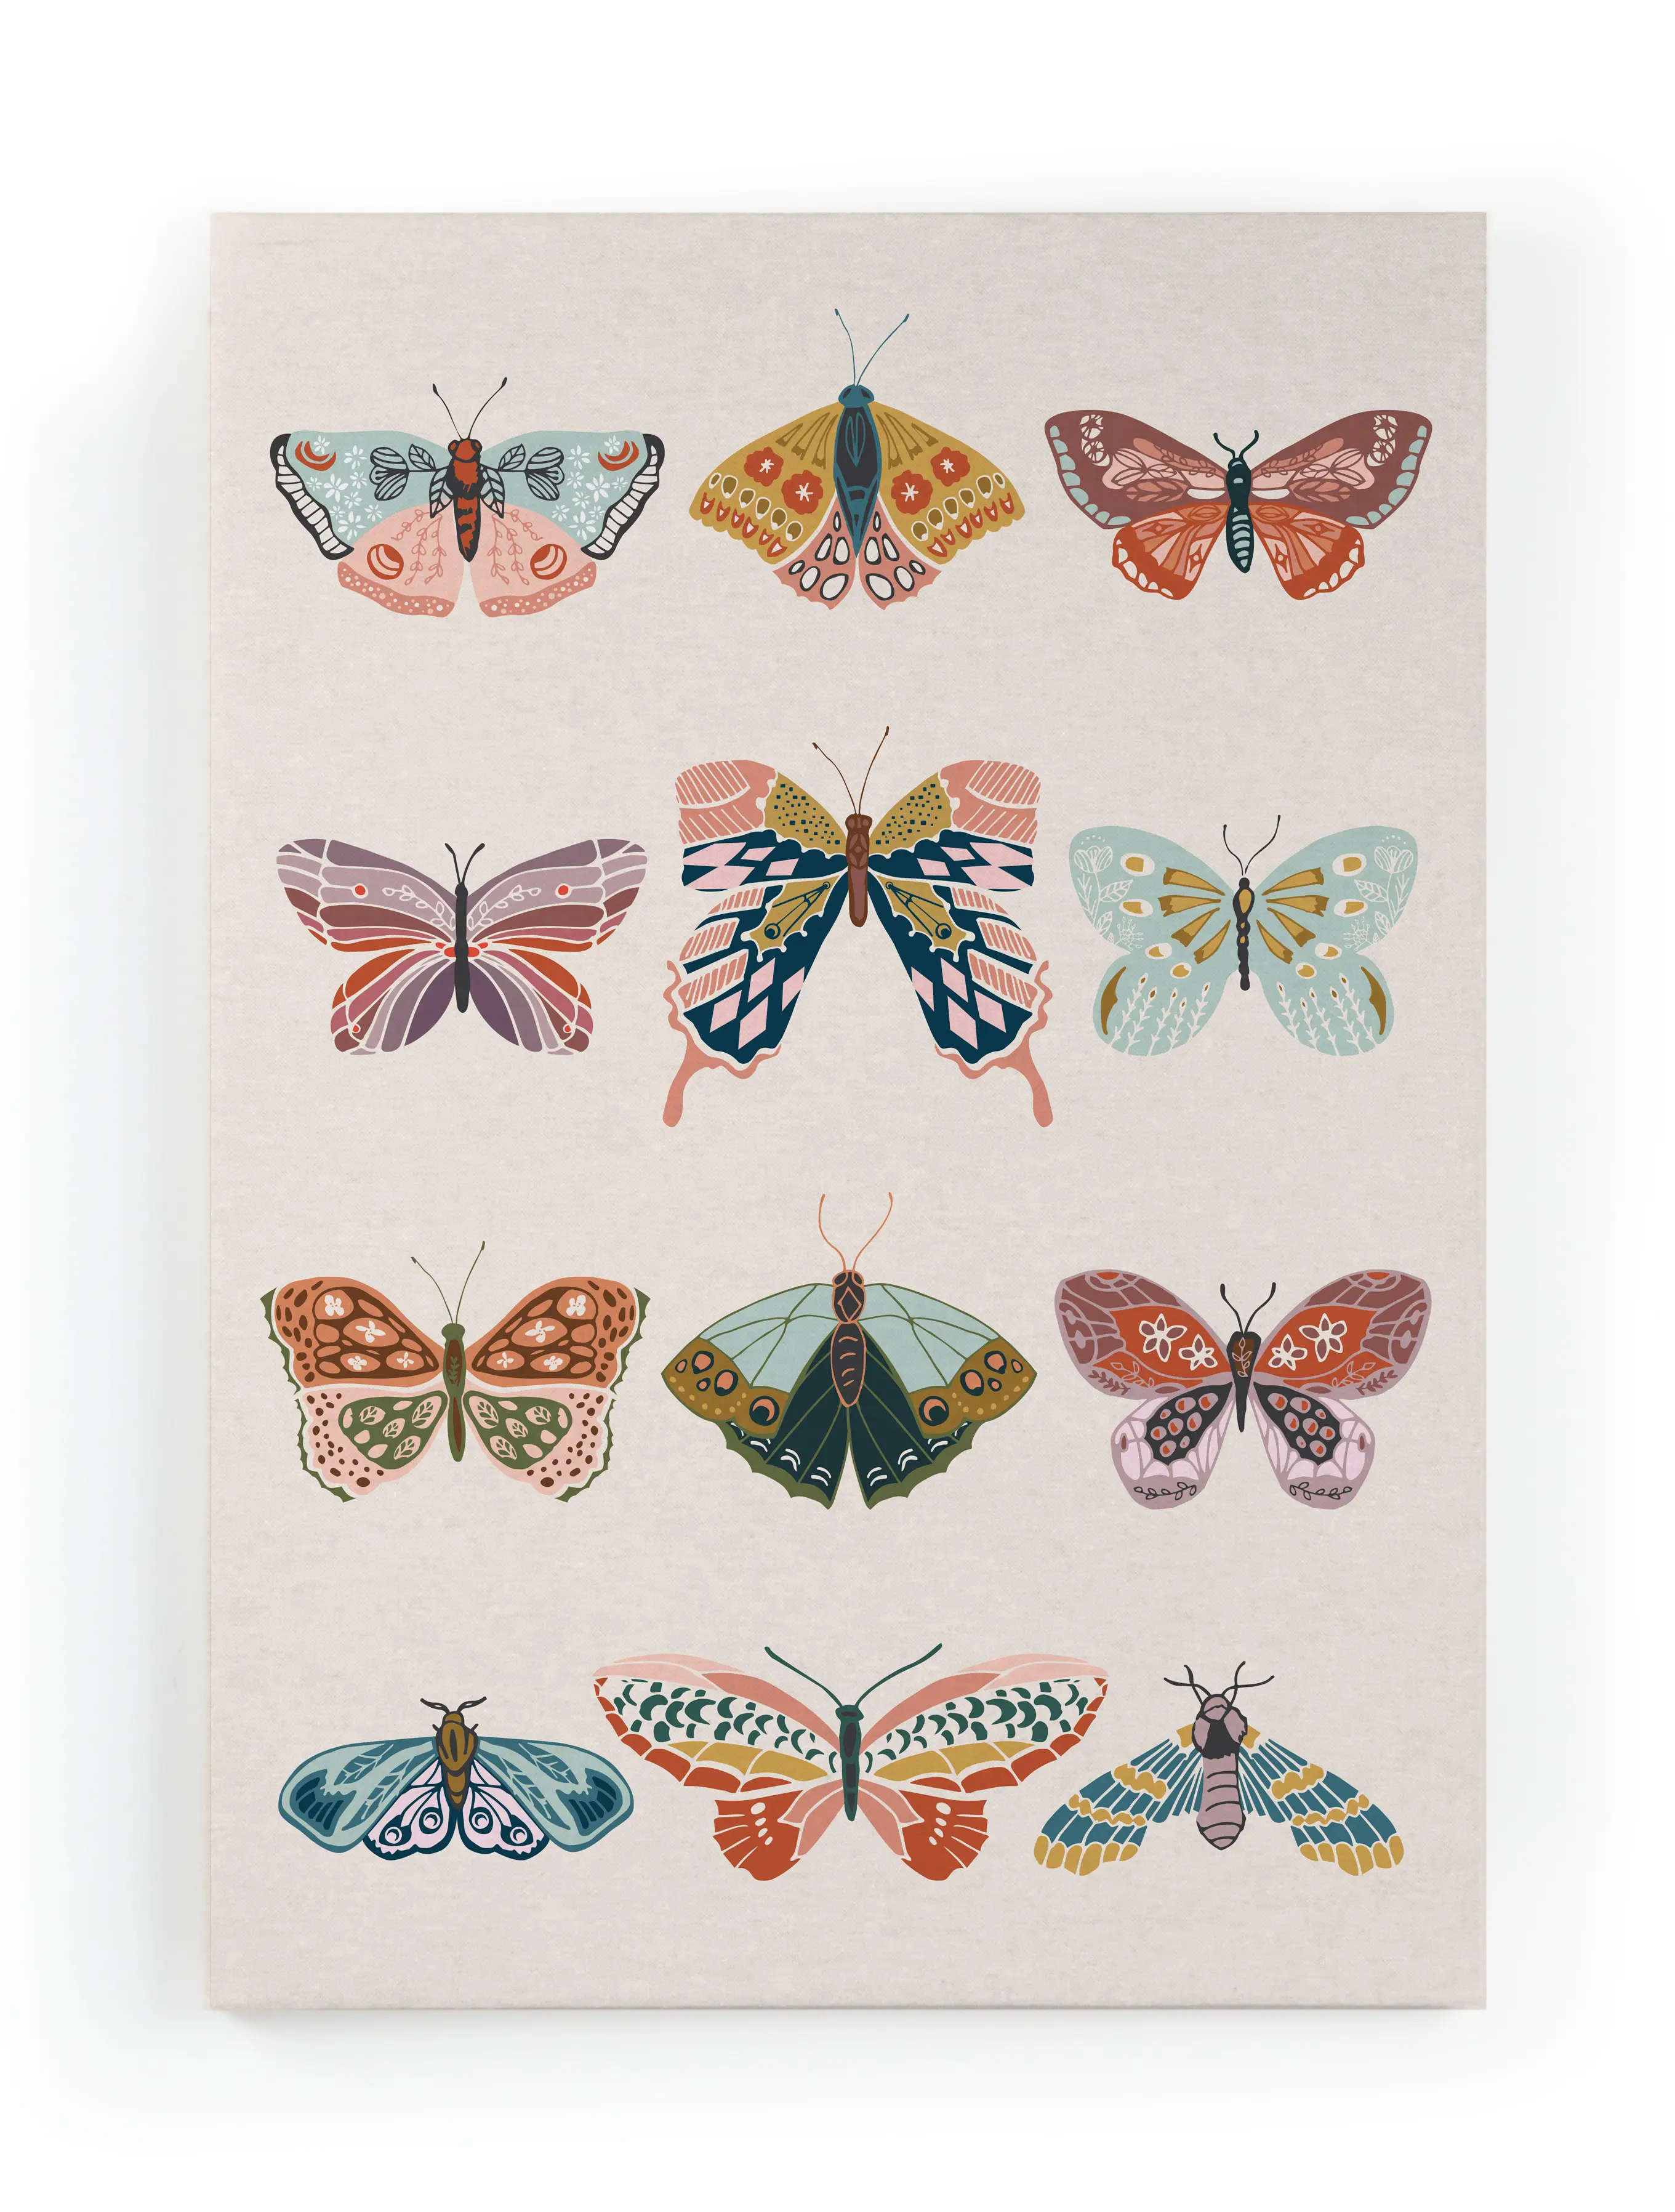 Leinwand 1 60x40 Schmetterlinge